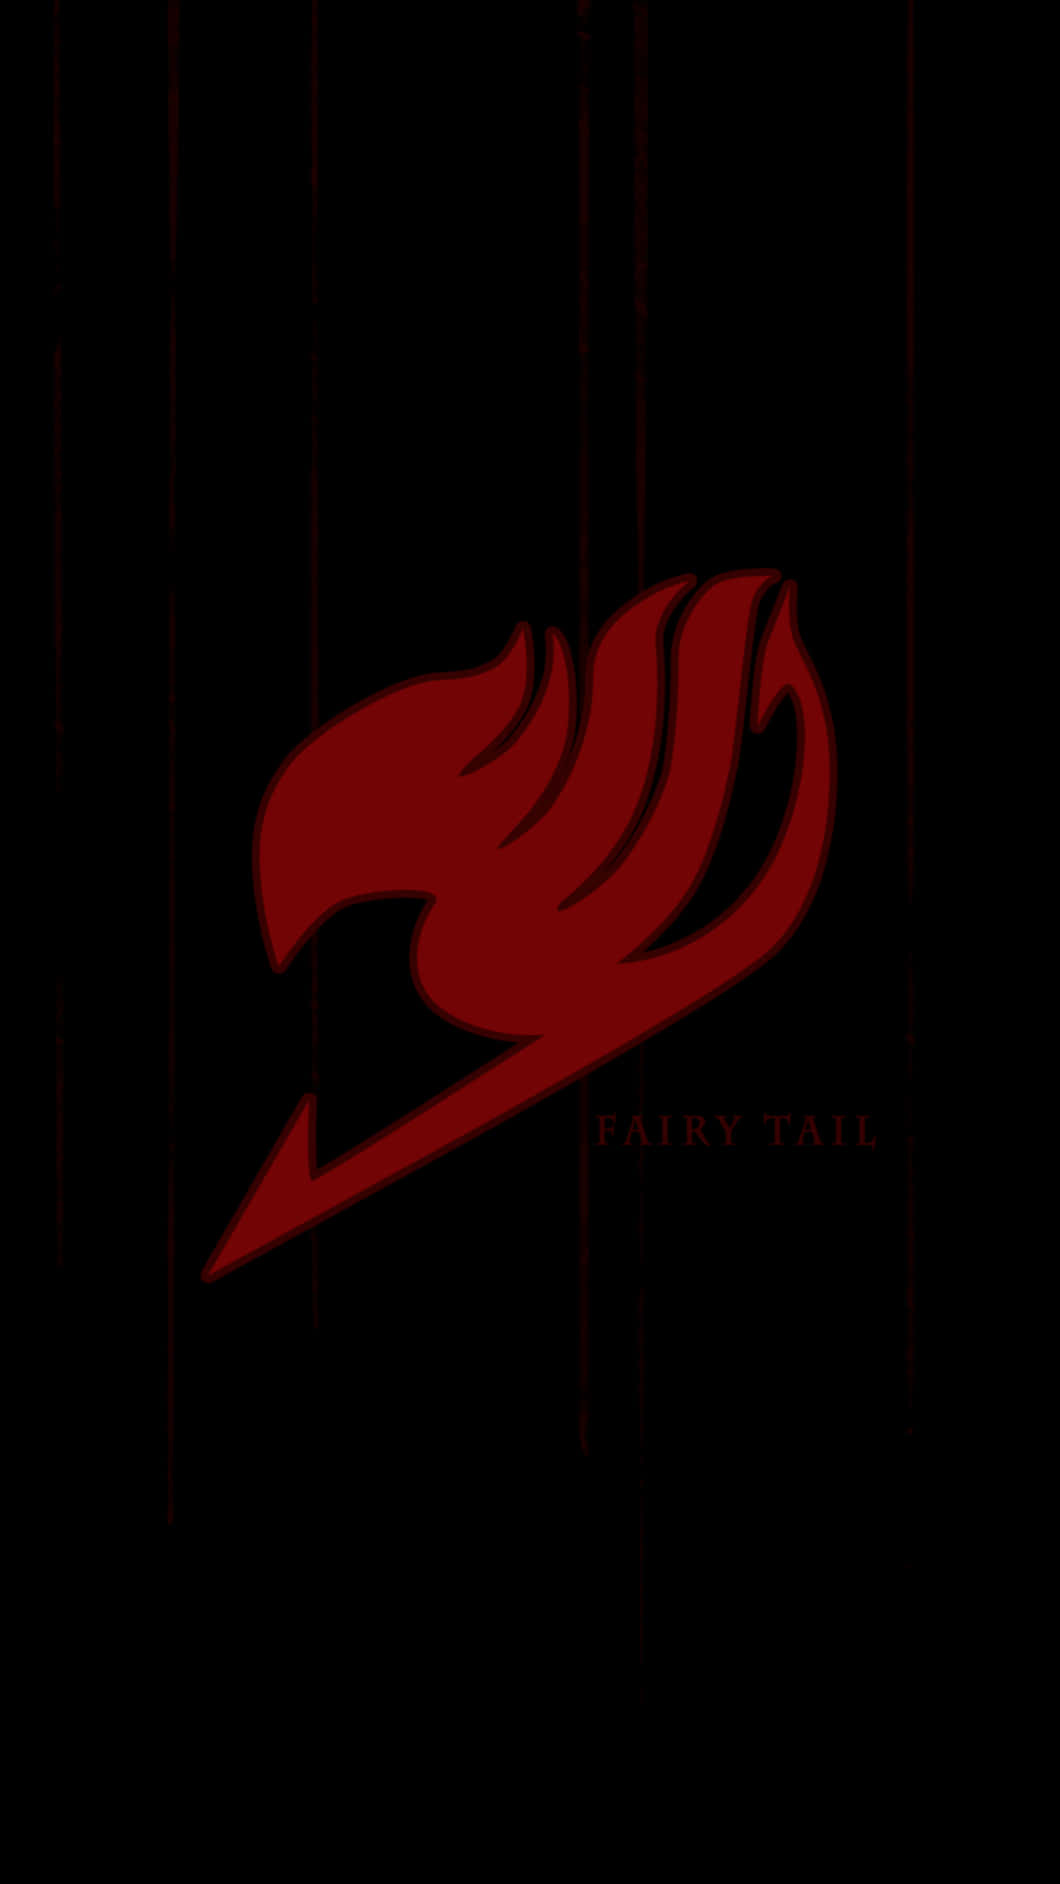 Stilfulllogotyp För Fairy Tail På Dator- Eller Mobilbakgrund. Wallpaper